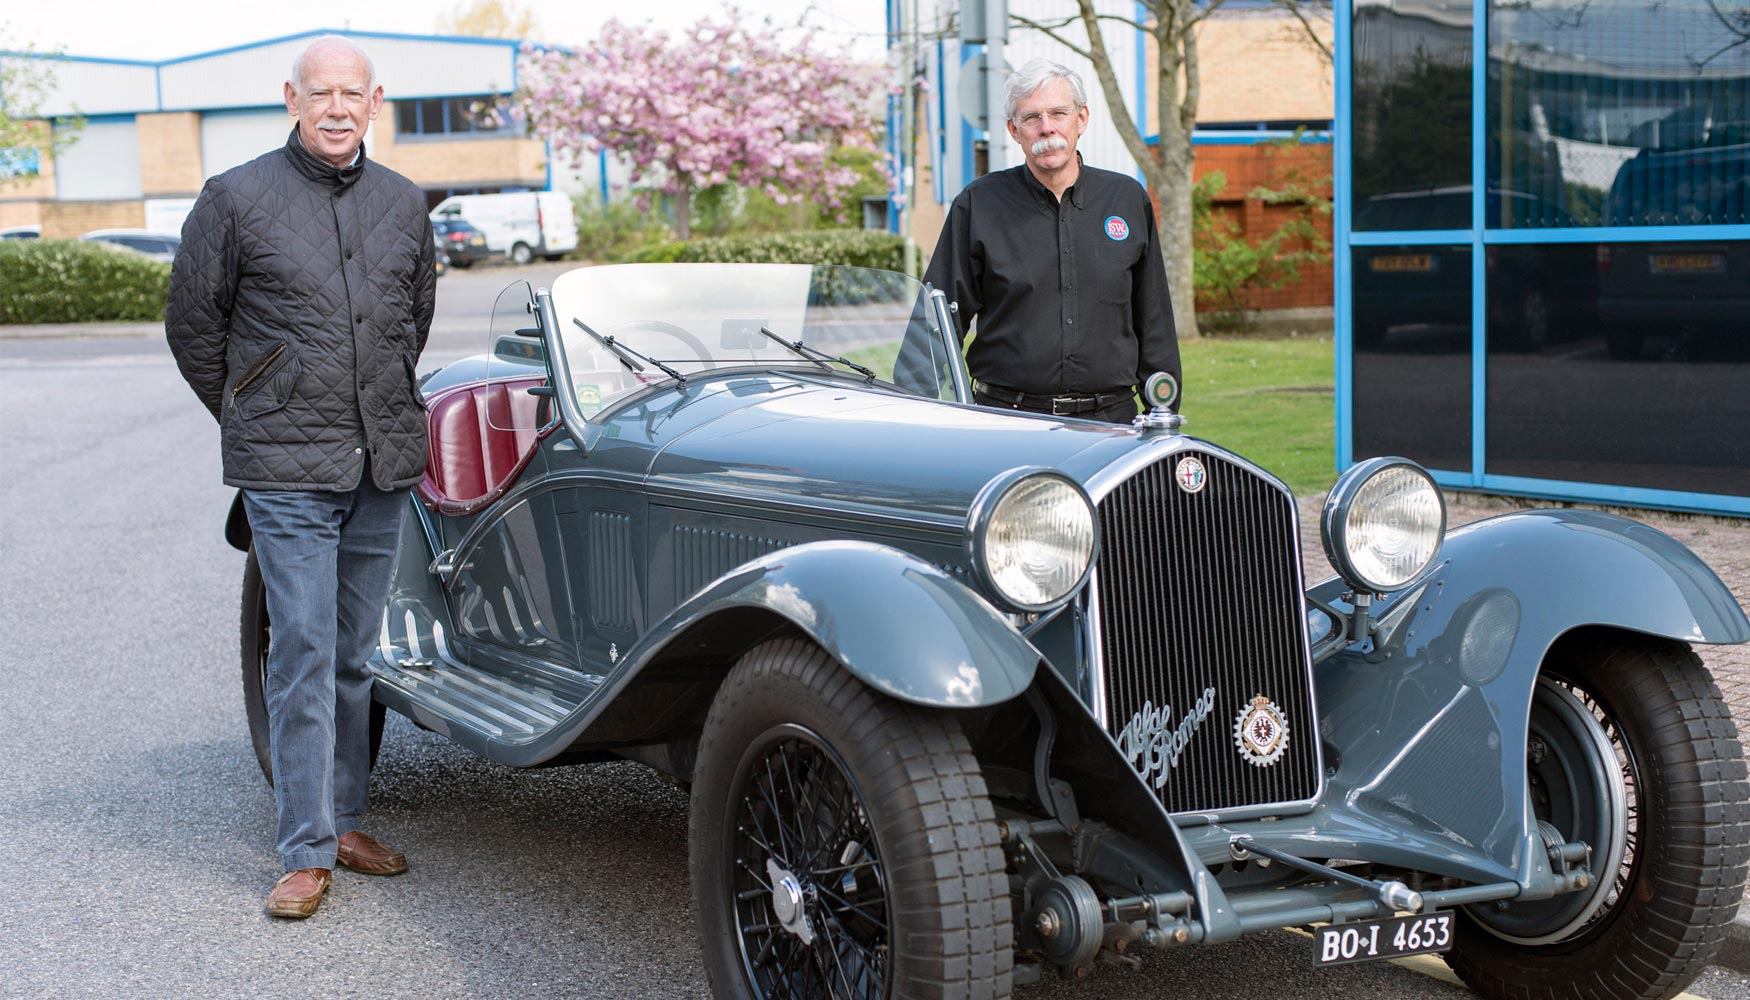 Paul Gregory, propietario del Alfa Romeo 8C, y Jim Stokes, fundador y CEO de Jim Stokes Workshops Ltd